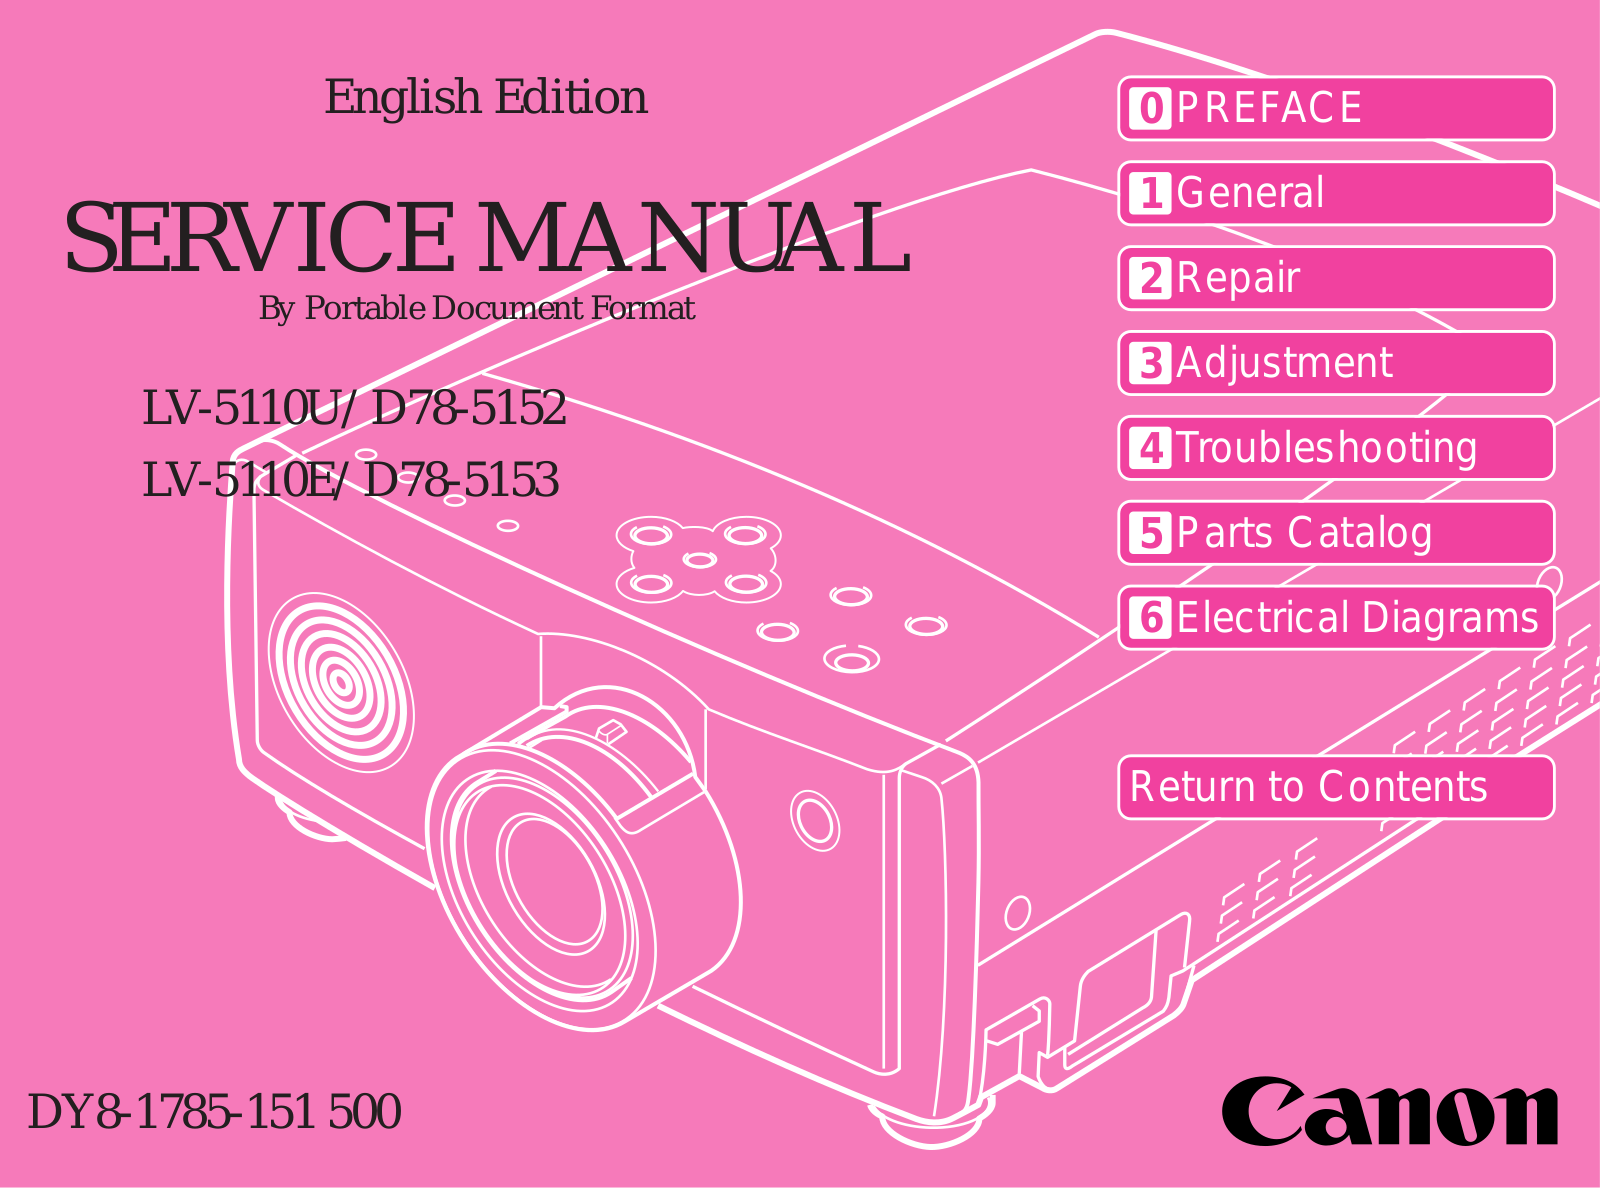 Canon D78-5152, LV-5110E, D78-5153 User Manual